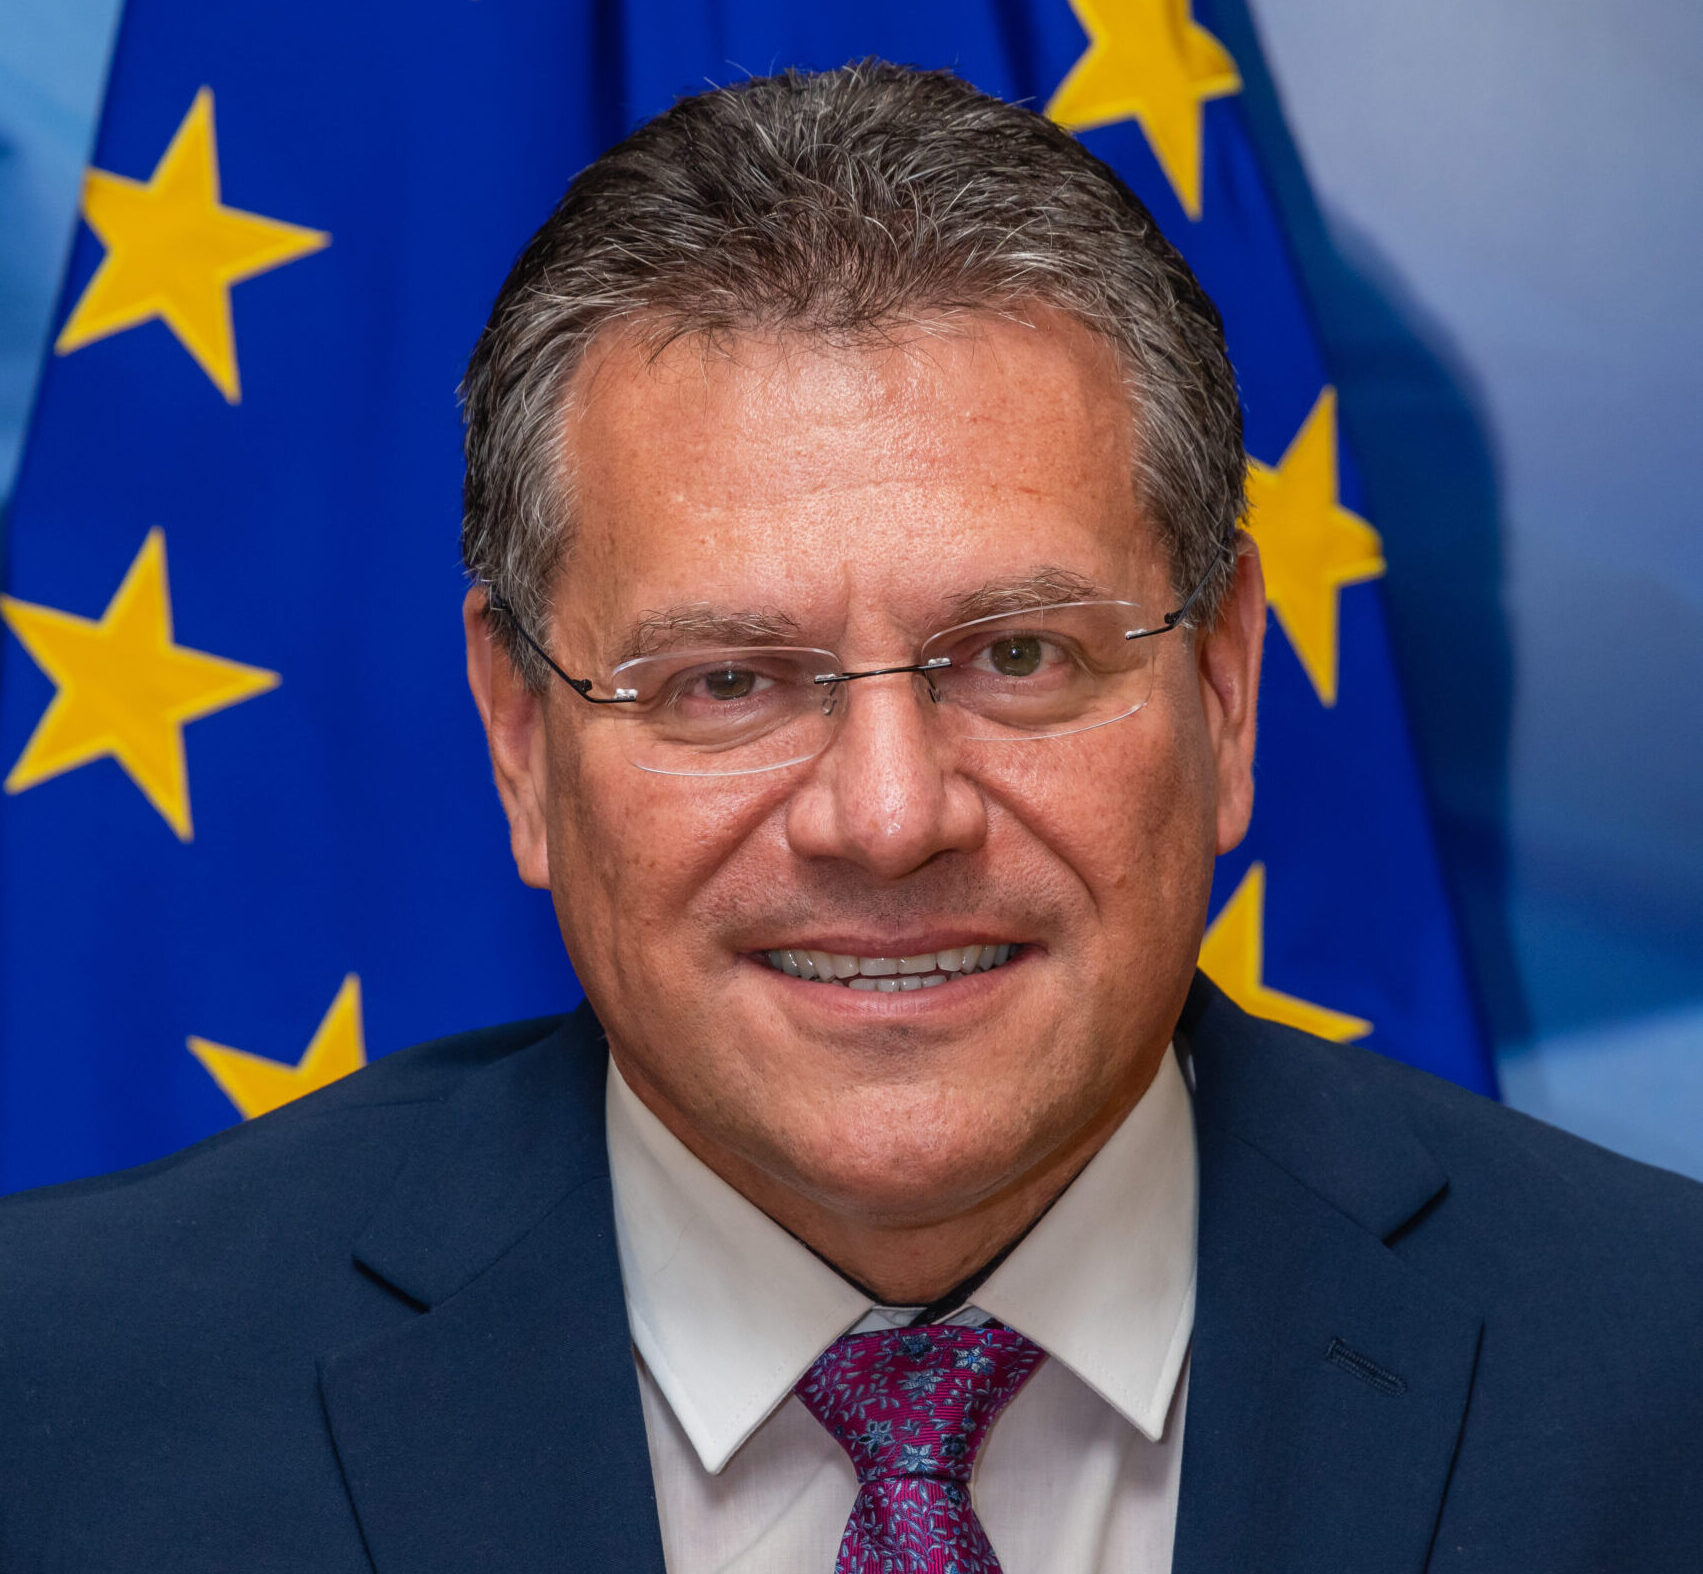 Patronát nad podujatím</p>
<p>JUDr. Maroš Šefčovič, PhD.</p>
<p><em>podpredseda Európskej komisie pre medziinštitucionálne vzťahy a strategický výhľad</em>